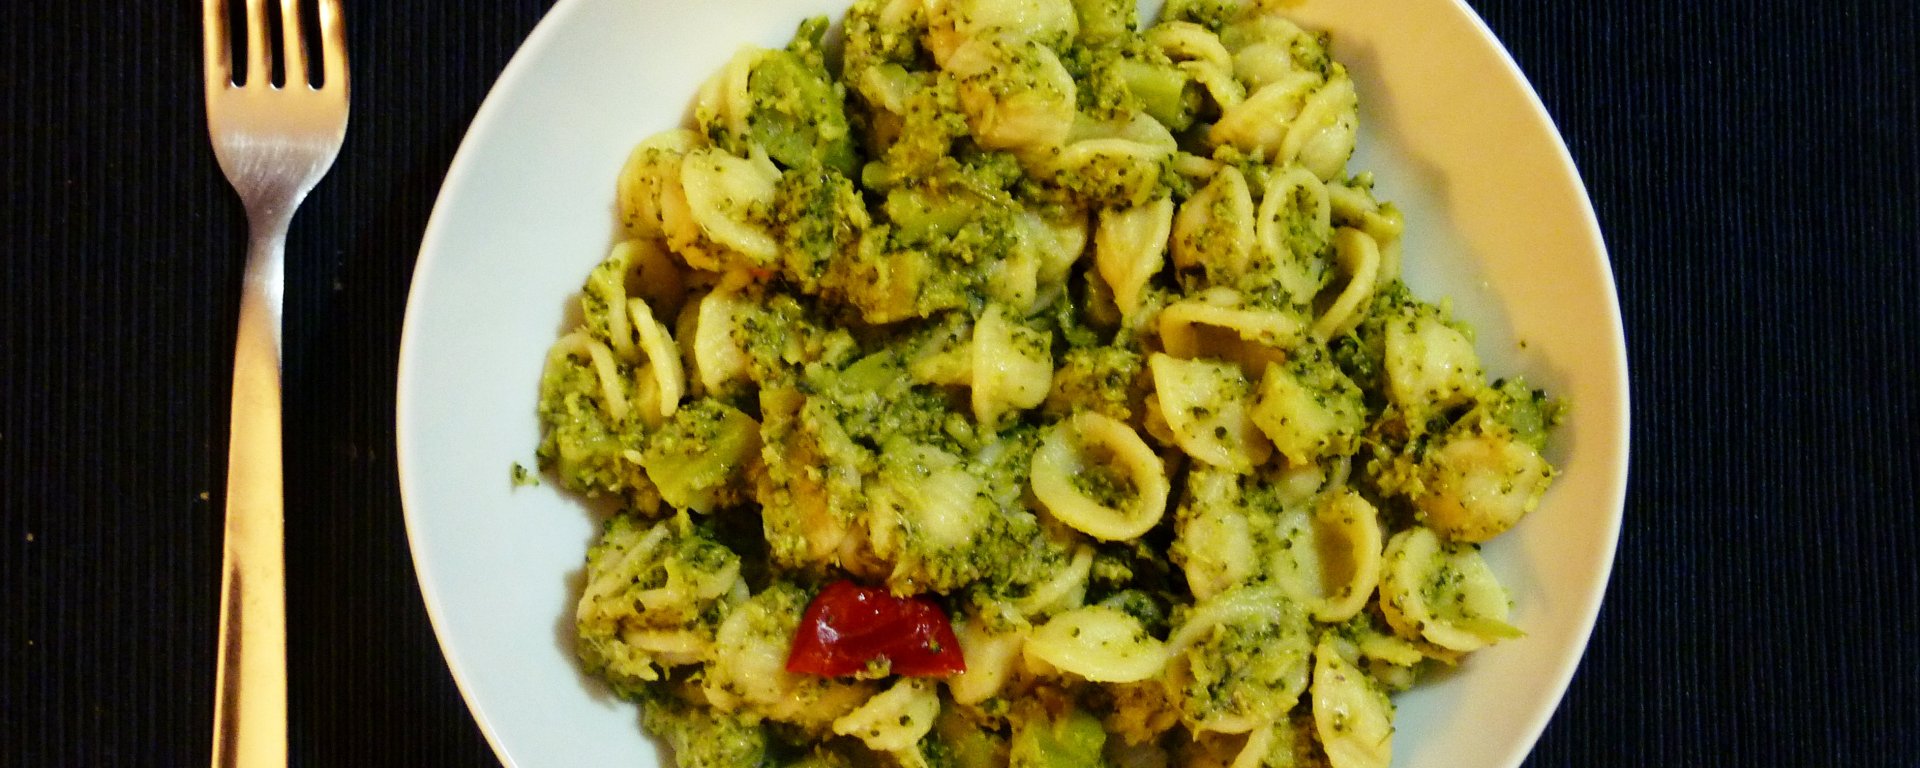 Orecchiette with broccoli, anchovies, and chili pepper